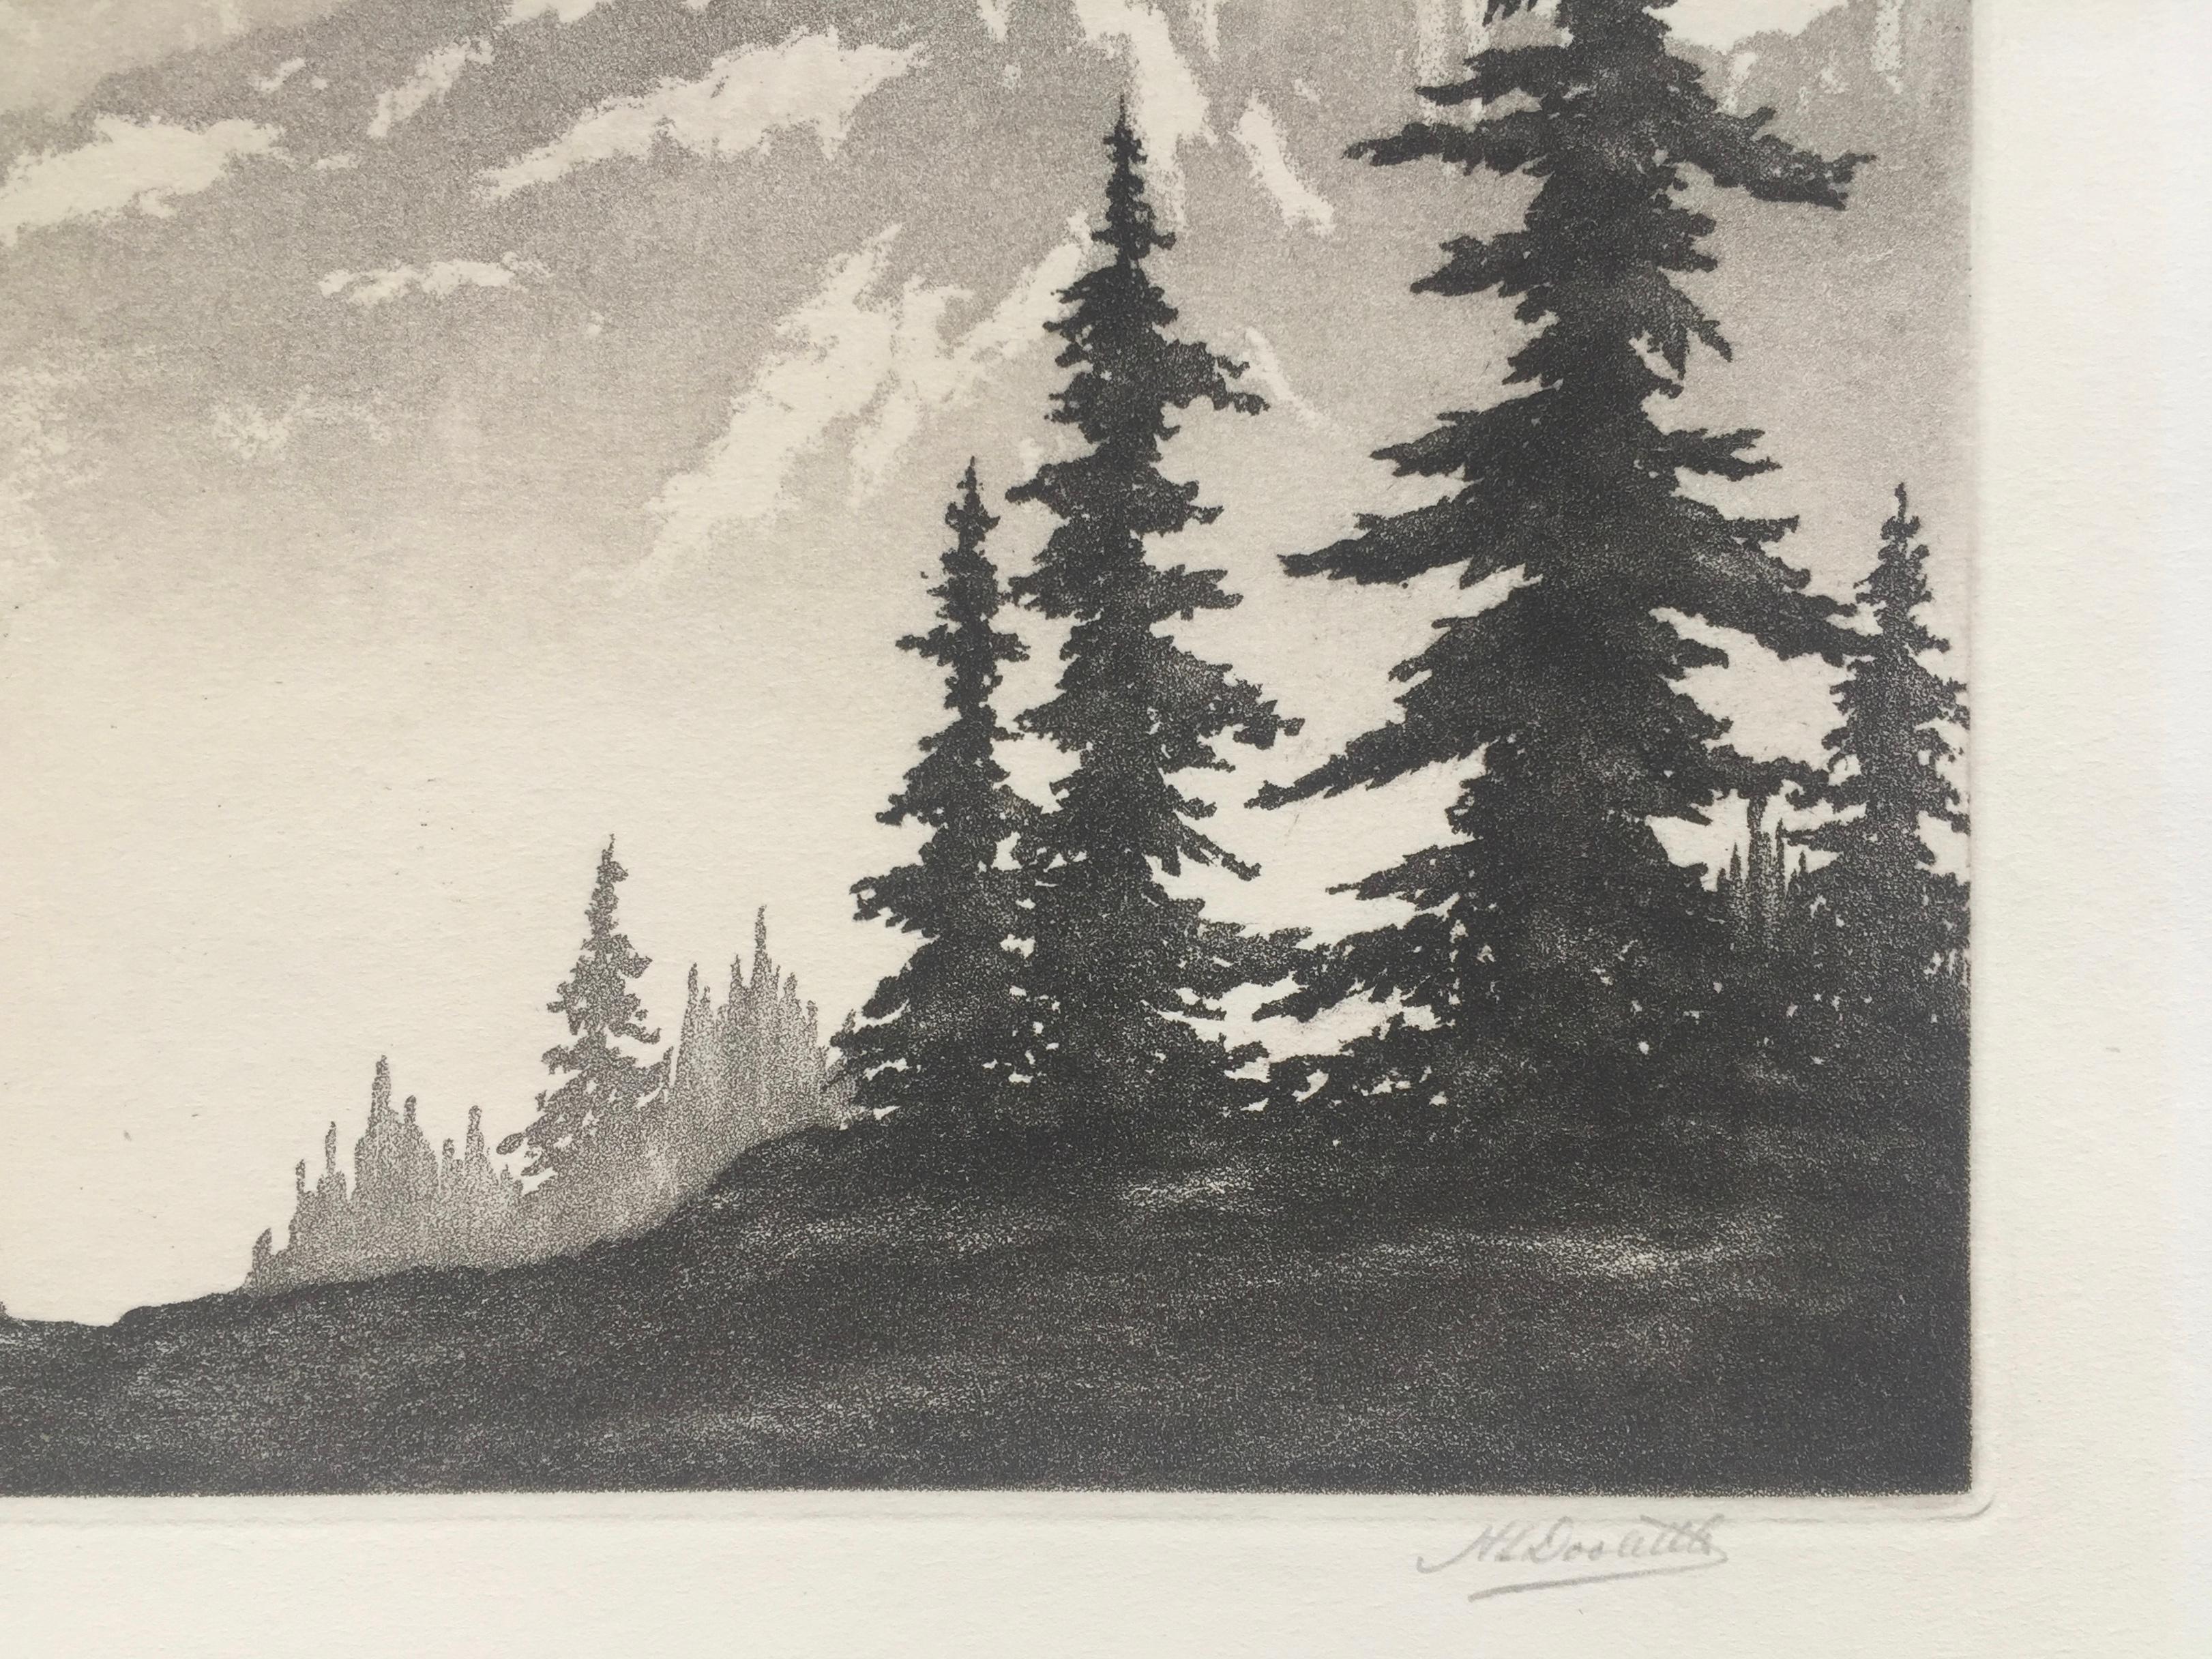 WESTERN PEAKS - Beige Landscape Print by Harold Lukens Doolittle